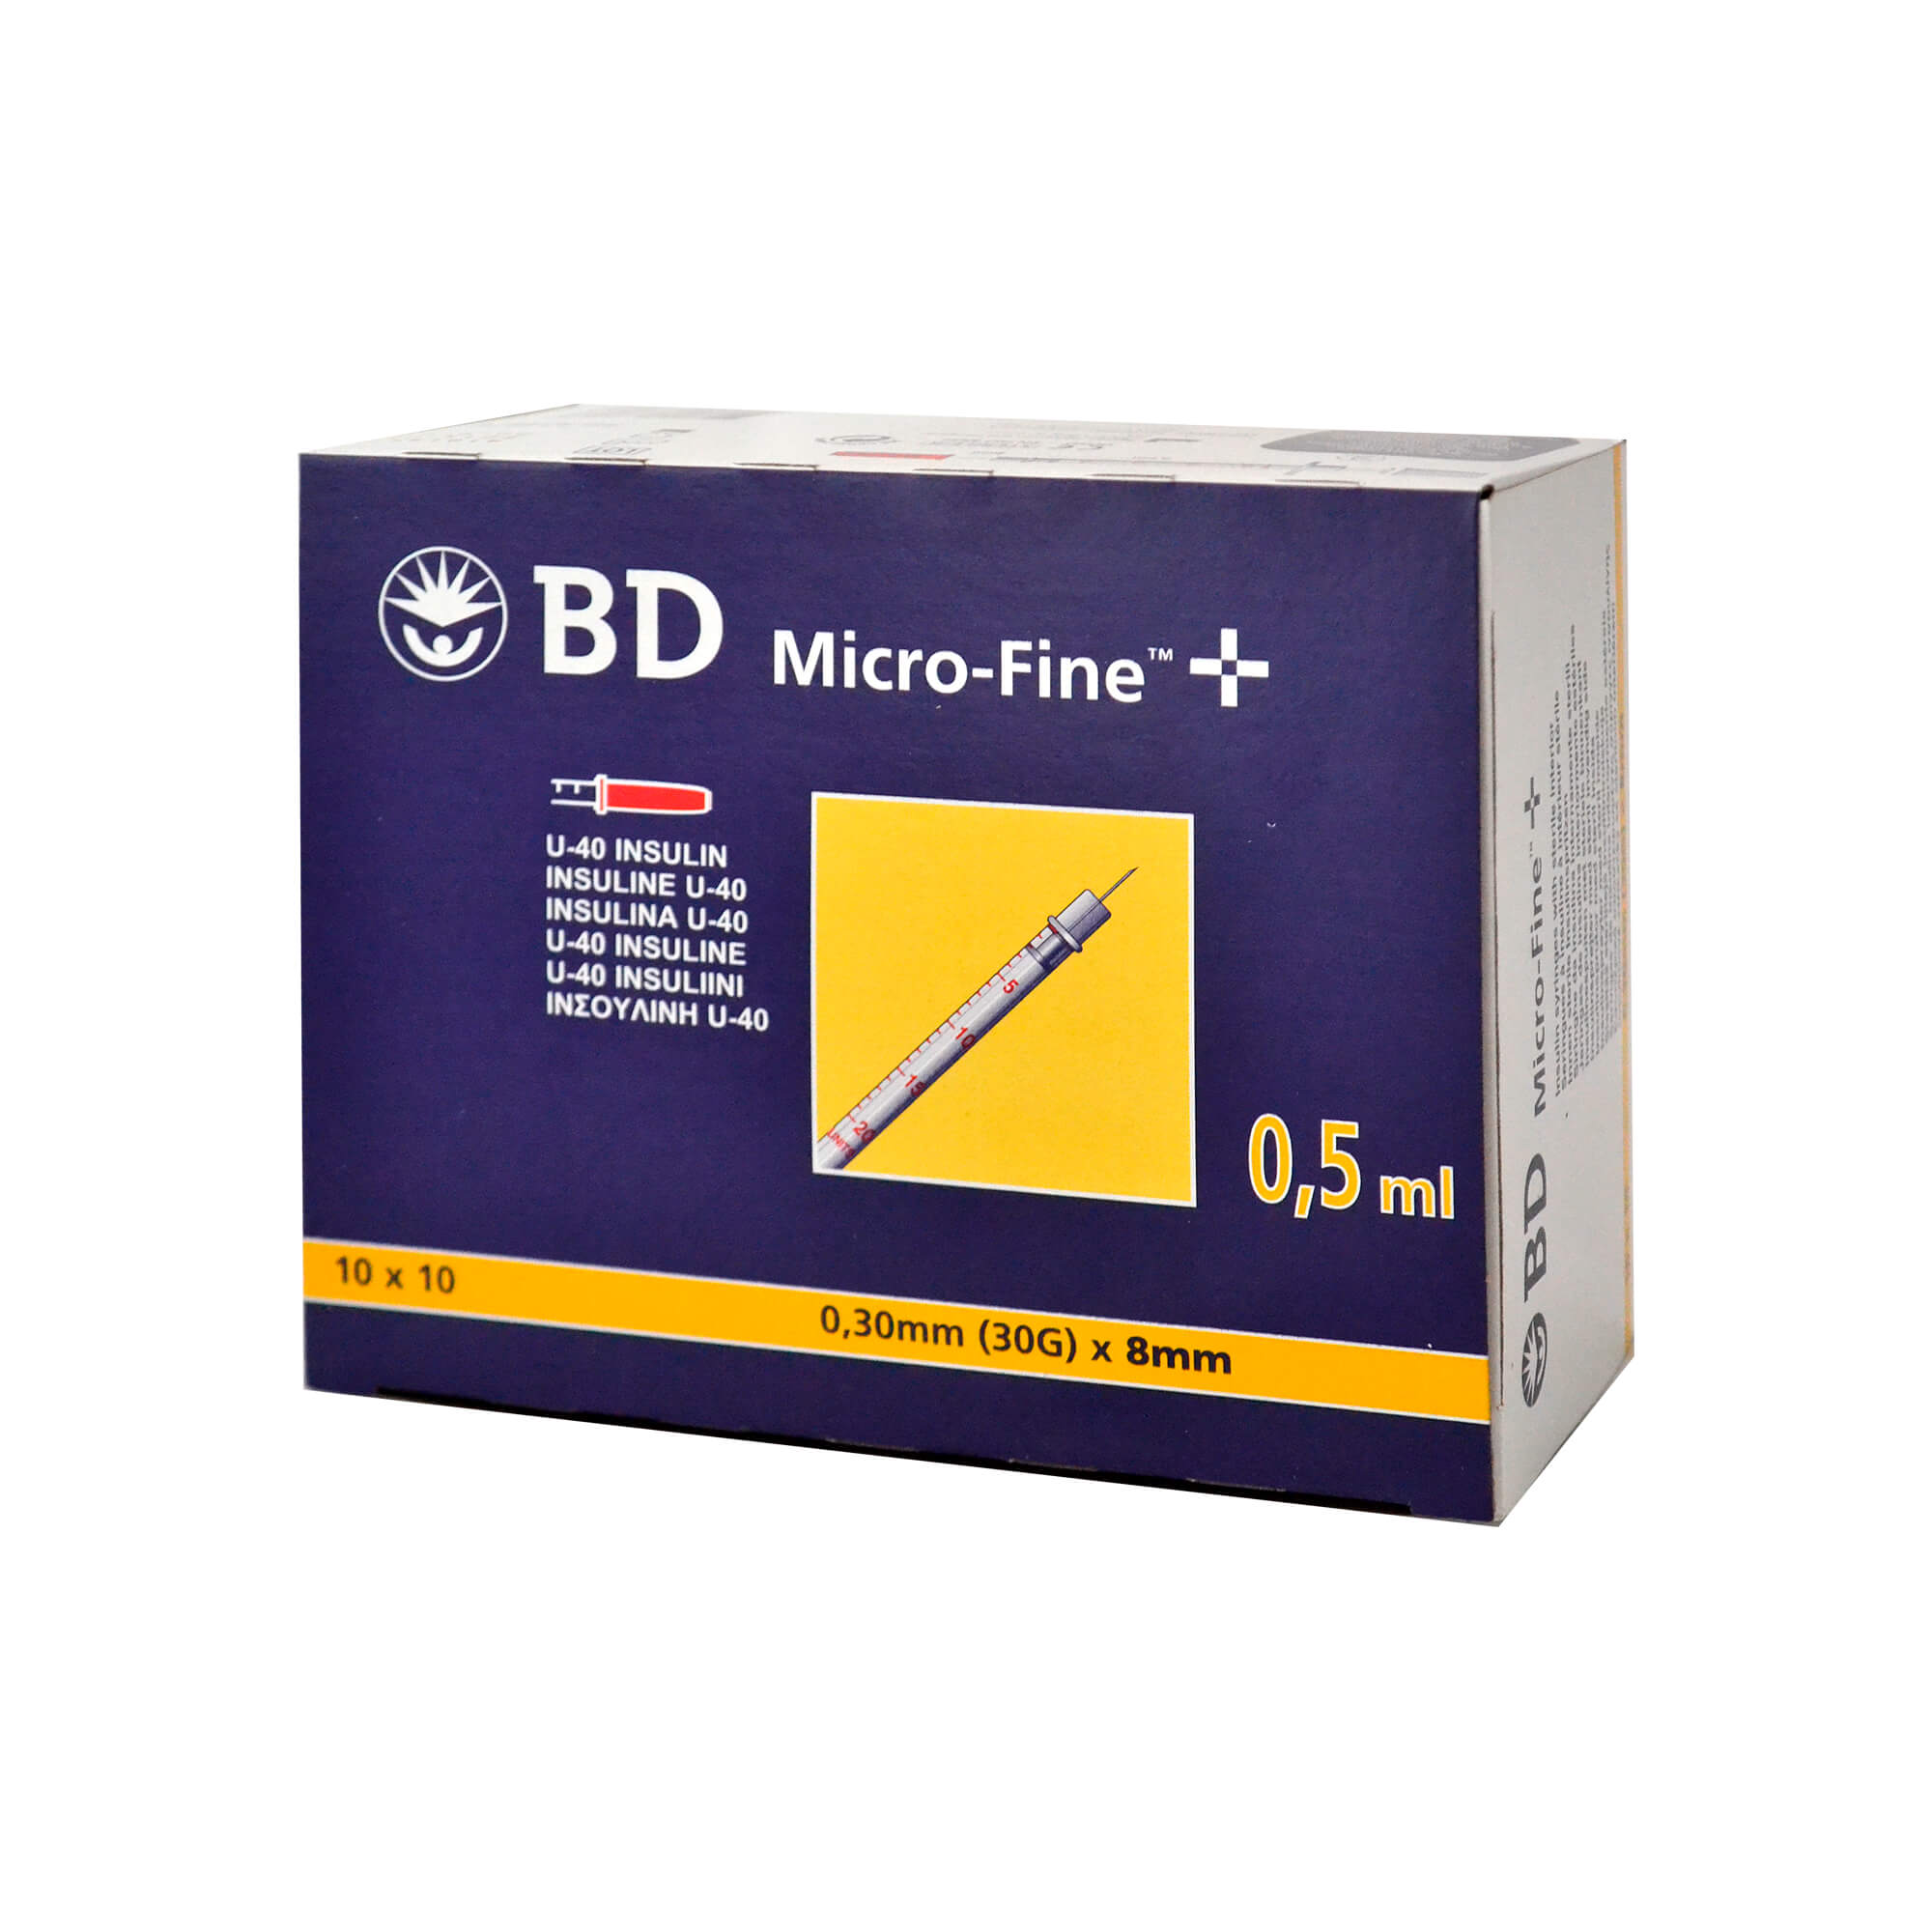 BD Micro-Fine+ Insulinspritzen 0,5 ml für U40-Insuline, Nadellänge: 8 mm, Nadelstärke: 0,30 mm.